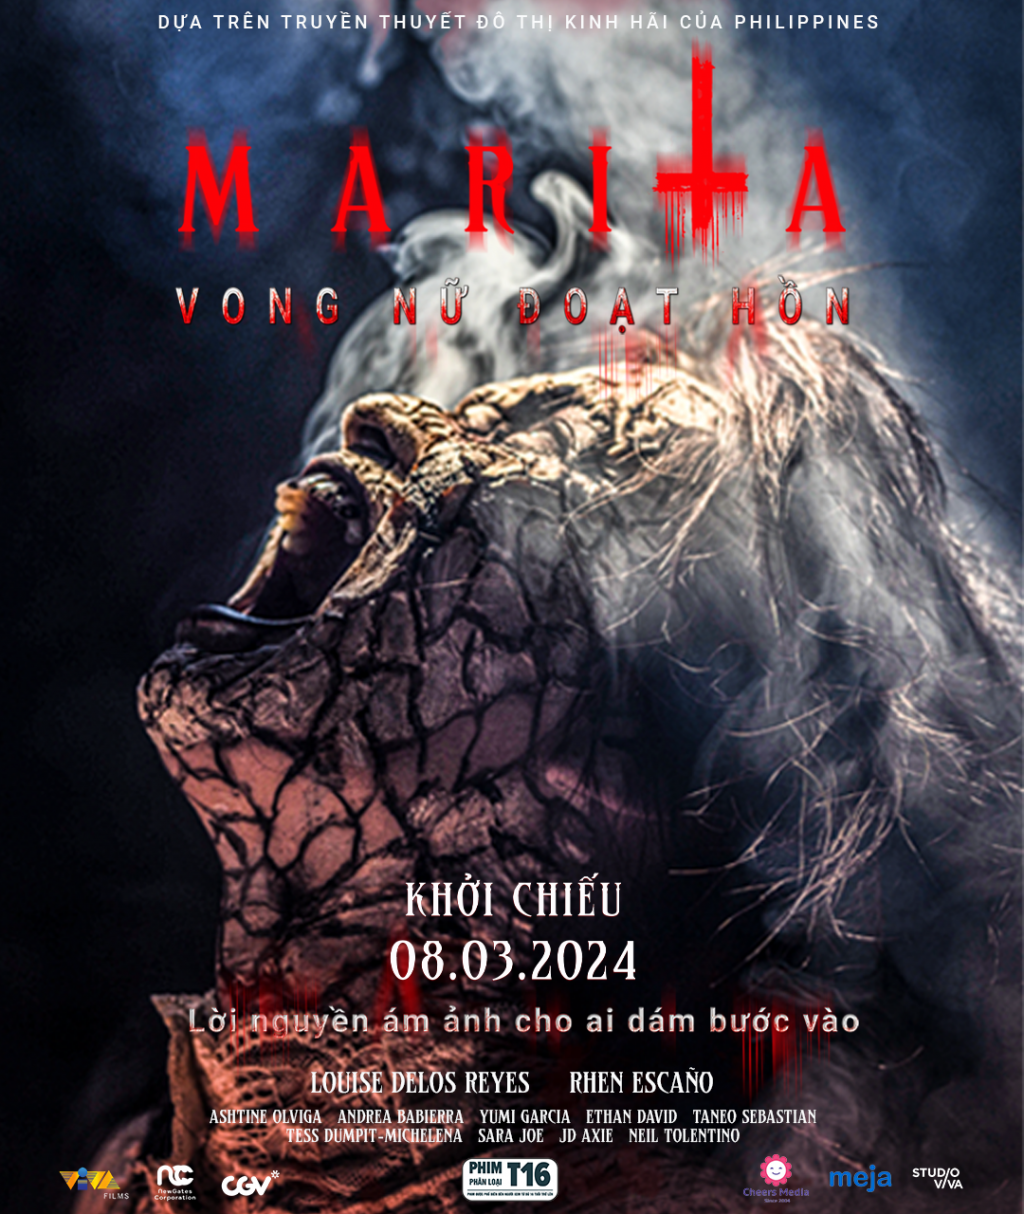 'Marita: Vong nữ đoạt hồn': Độc lạ phim kinh dị về truyền thuyết đô thị ra rạp ngày Quốc tế phụ nữ